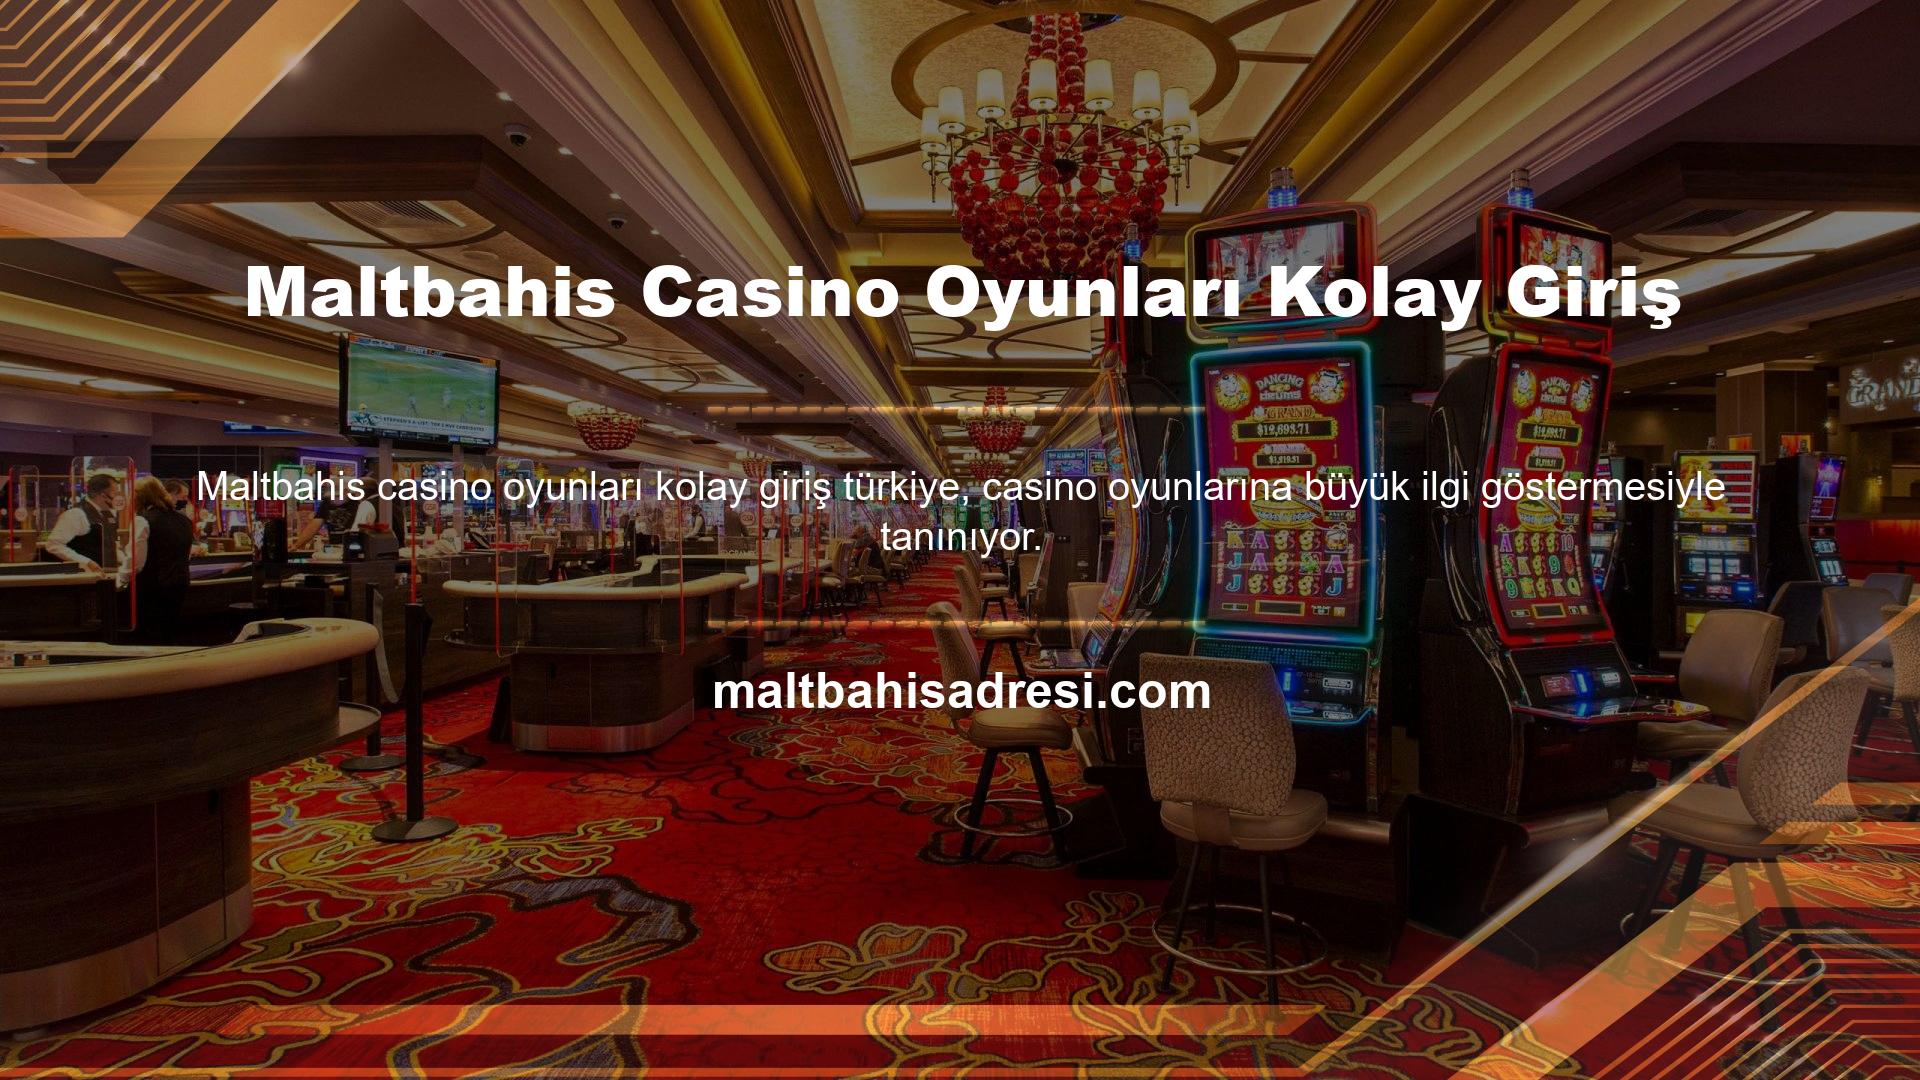 Maltbahis Casino Oyunları Kolay Girişi, bu tutkuyu sonuna kadar desteklemek için birçok casino tutkununun kullanabileceği onlarca kategorideki canlı casino oyunlarını içerir